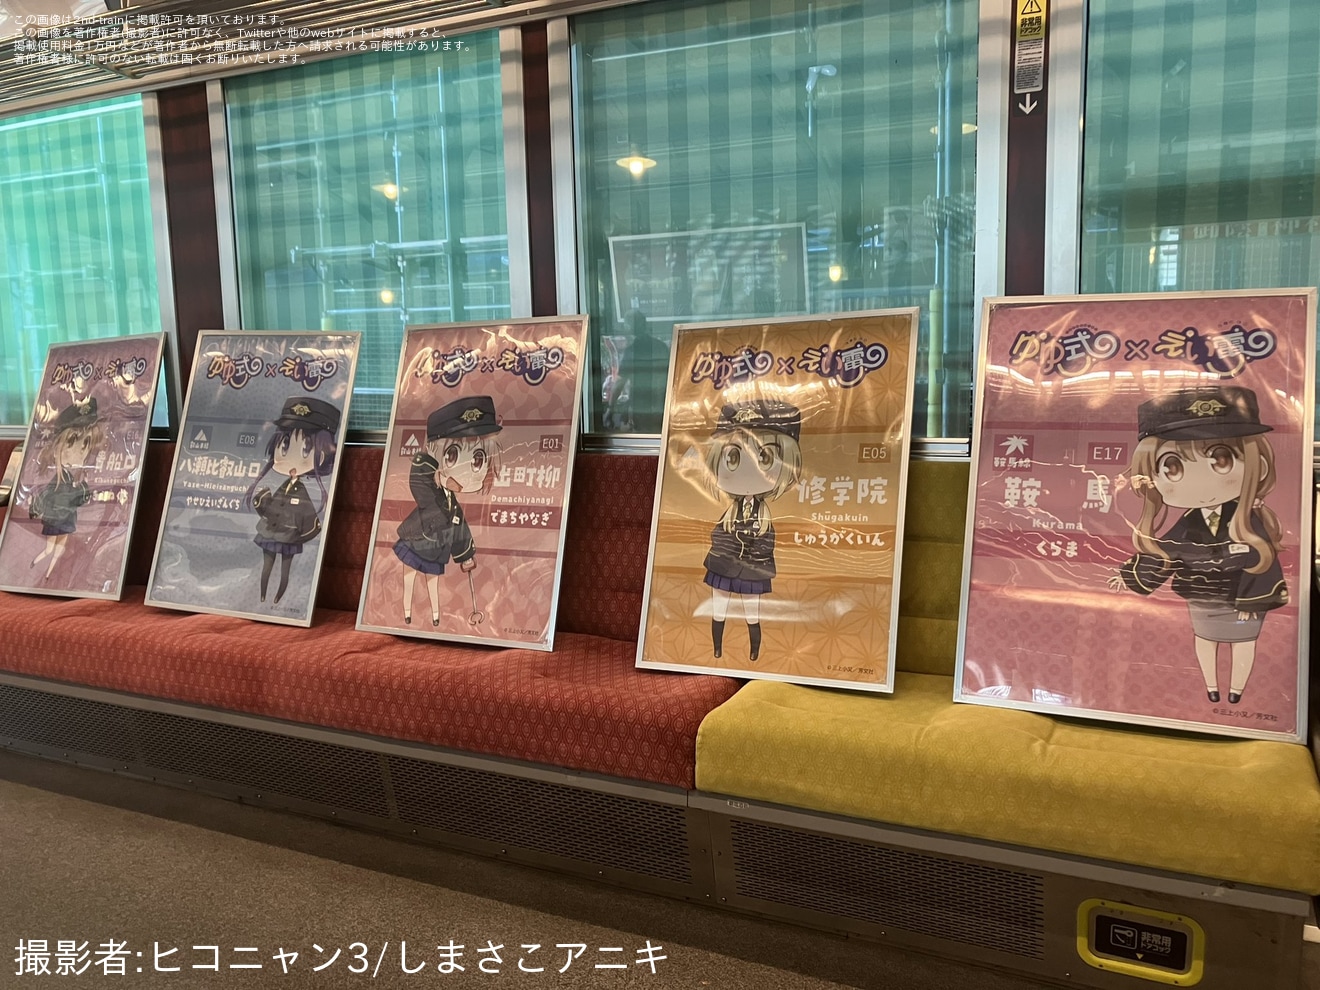 【叡電】「えいでん×ゆゆ式 コラボフェスタ2」イベント限定コラボヘッドマークを取り付けの拡大写真